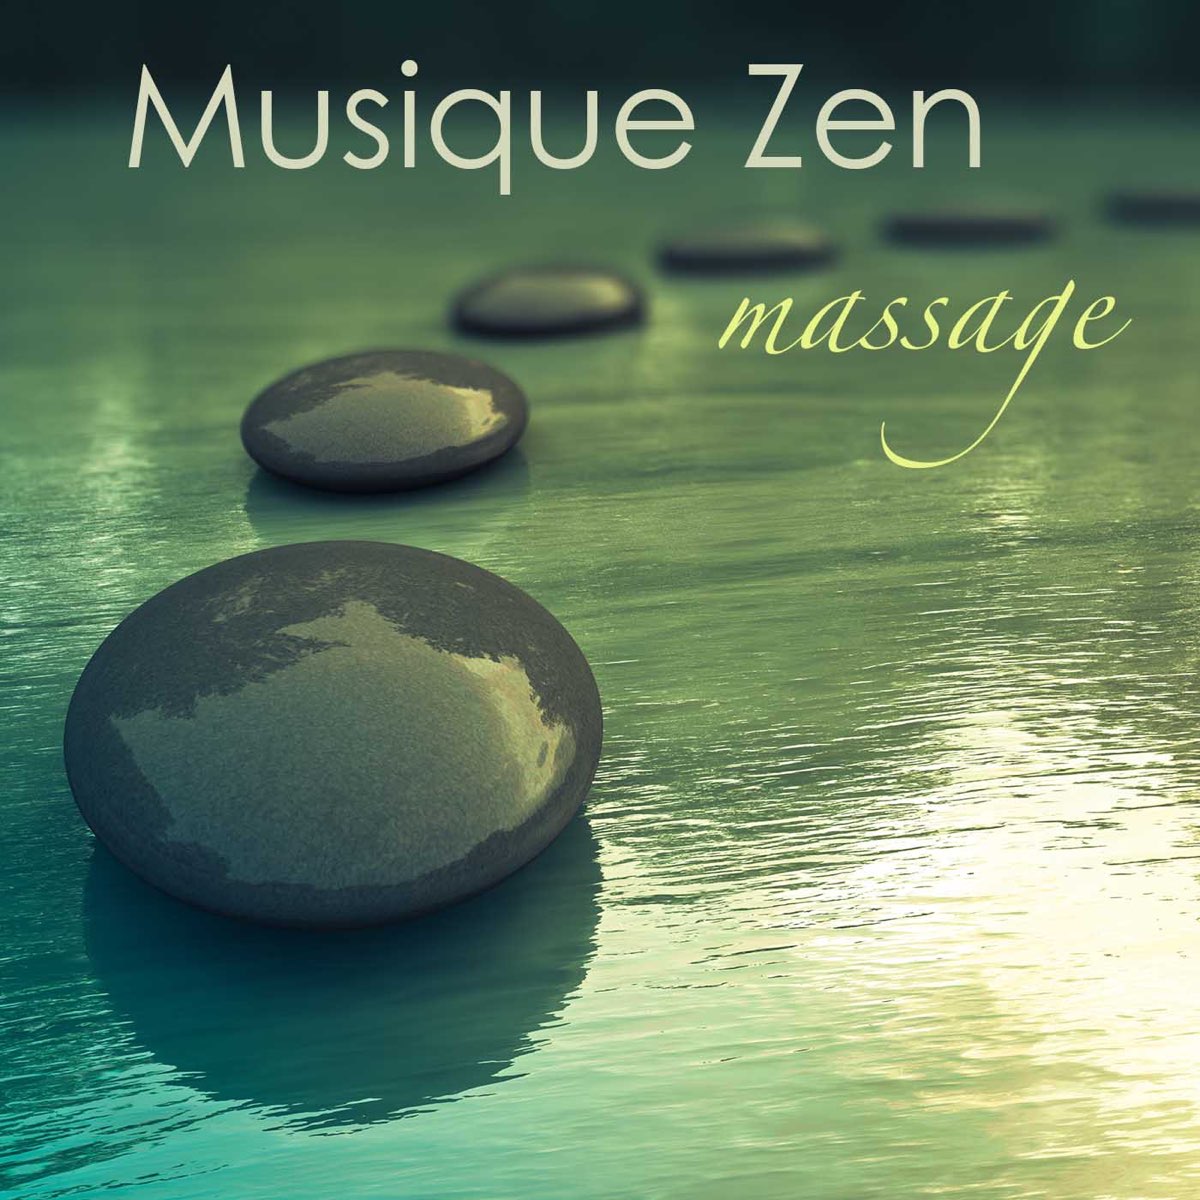 Musique zen massage: musique de fond pour harmonie, sérénité et bien-être,  musique relaxante pour le massage et relax - Album by Oasis de Détente et  Relaxation - Apple Music